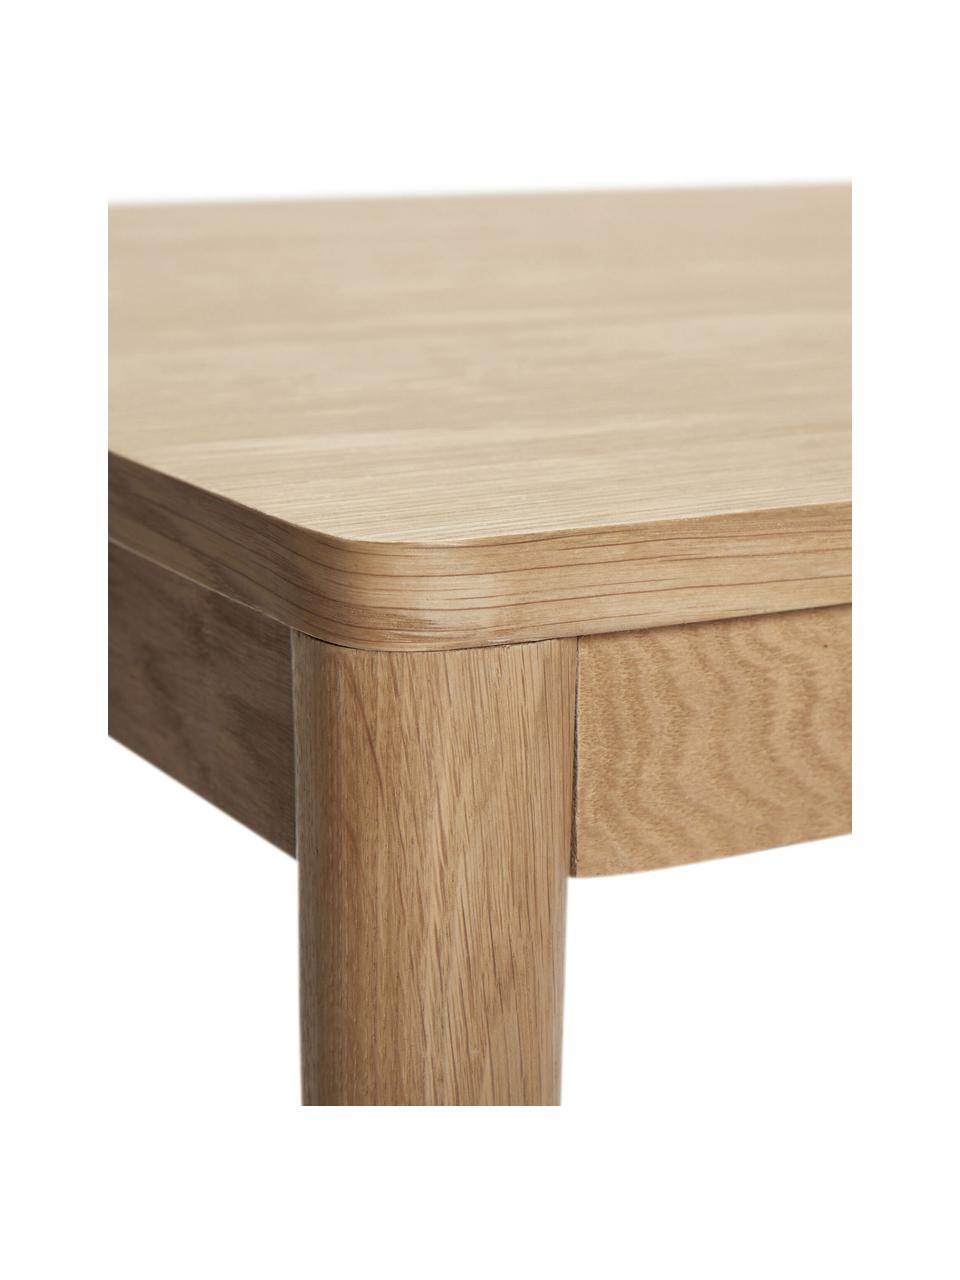 Tavolo  in legno di quercia Acorn, 140 x 80 cm, Legno di quercia certificato FSC, Legno di quercia, Larg. 140 x Prof. 80 cm